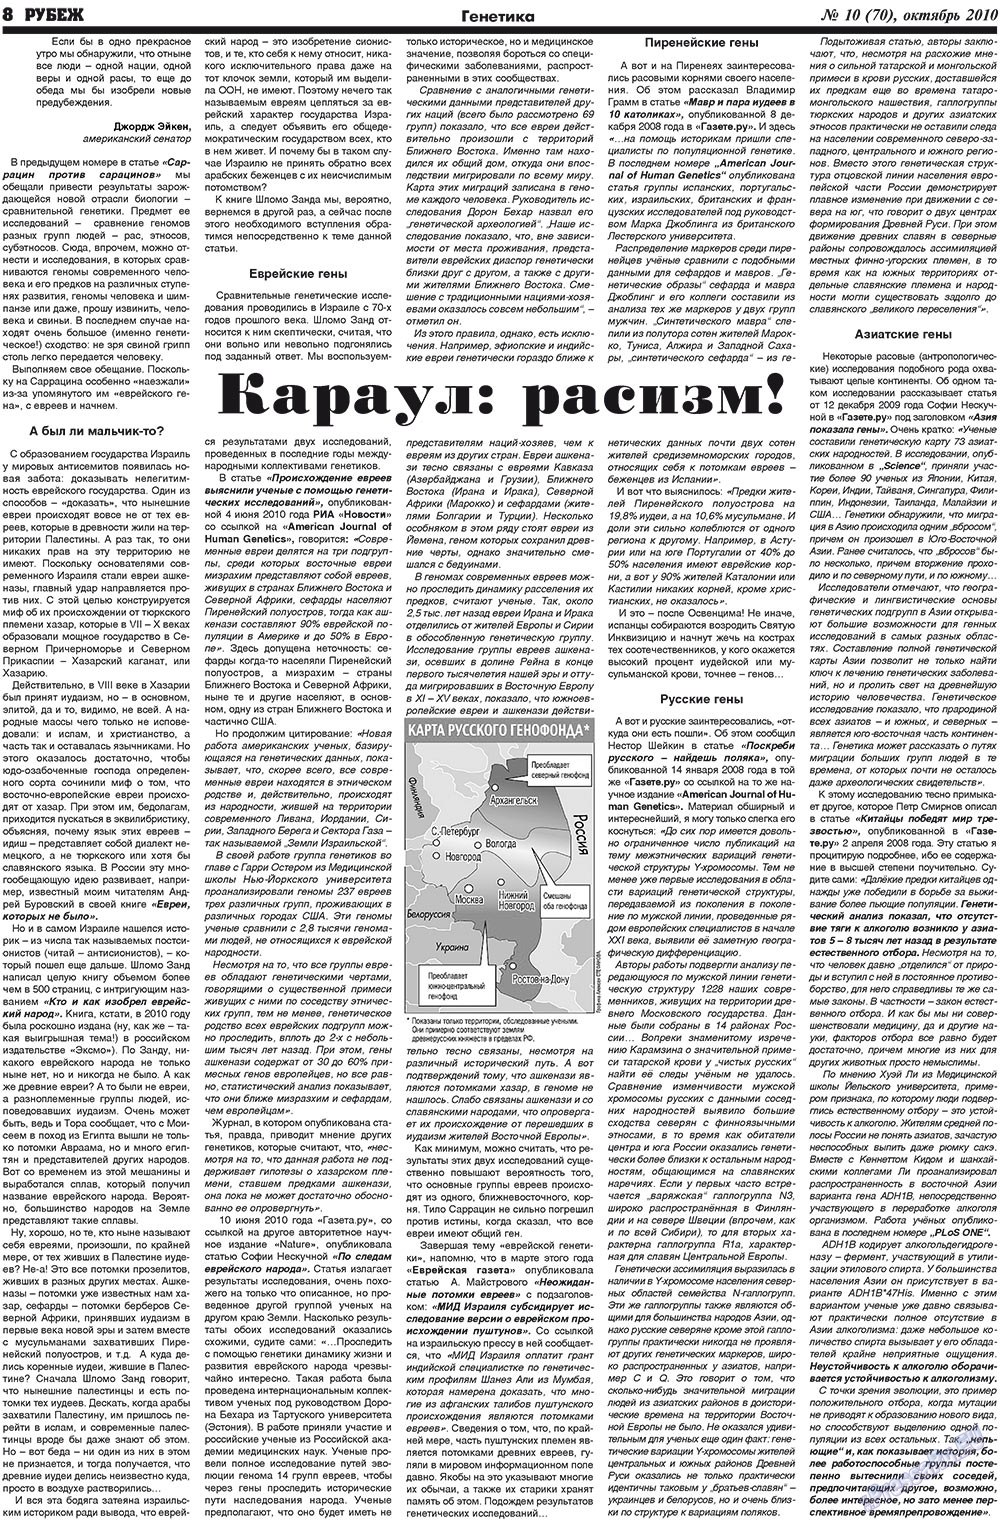 Рубеж (газета). 2010 год, номер 10, стр. 8